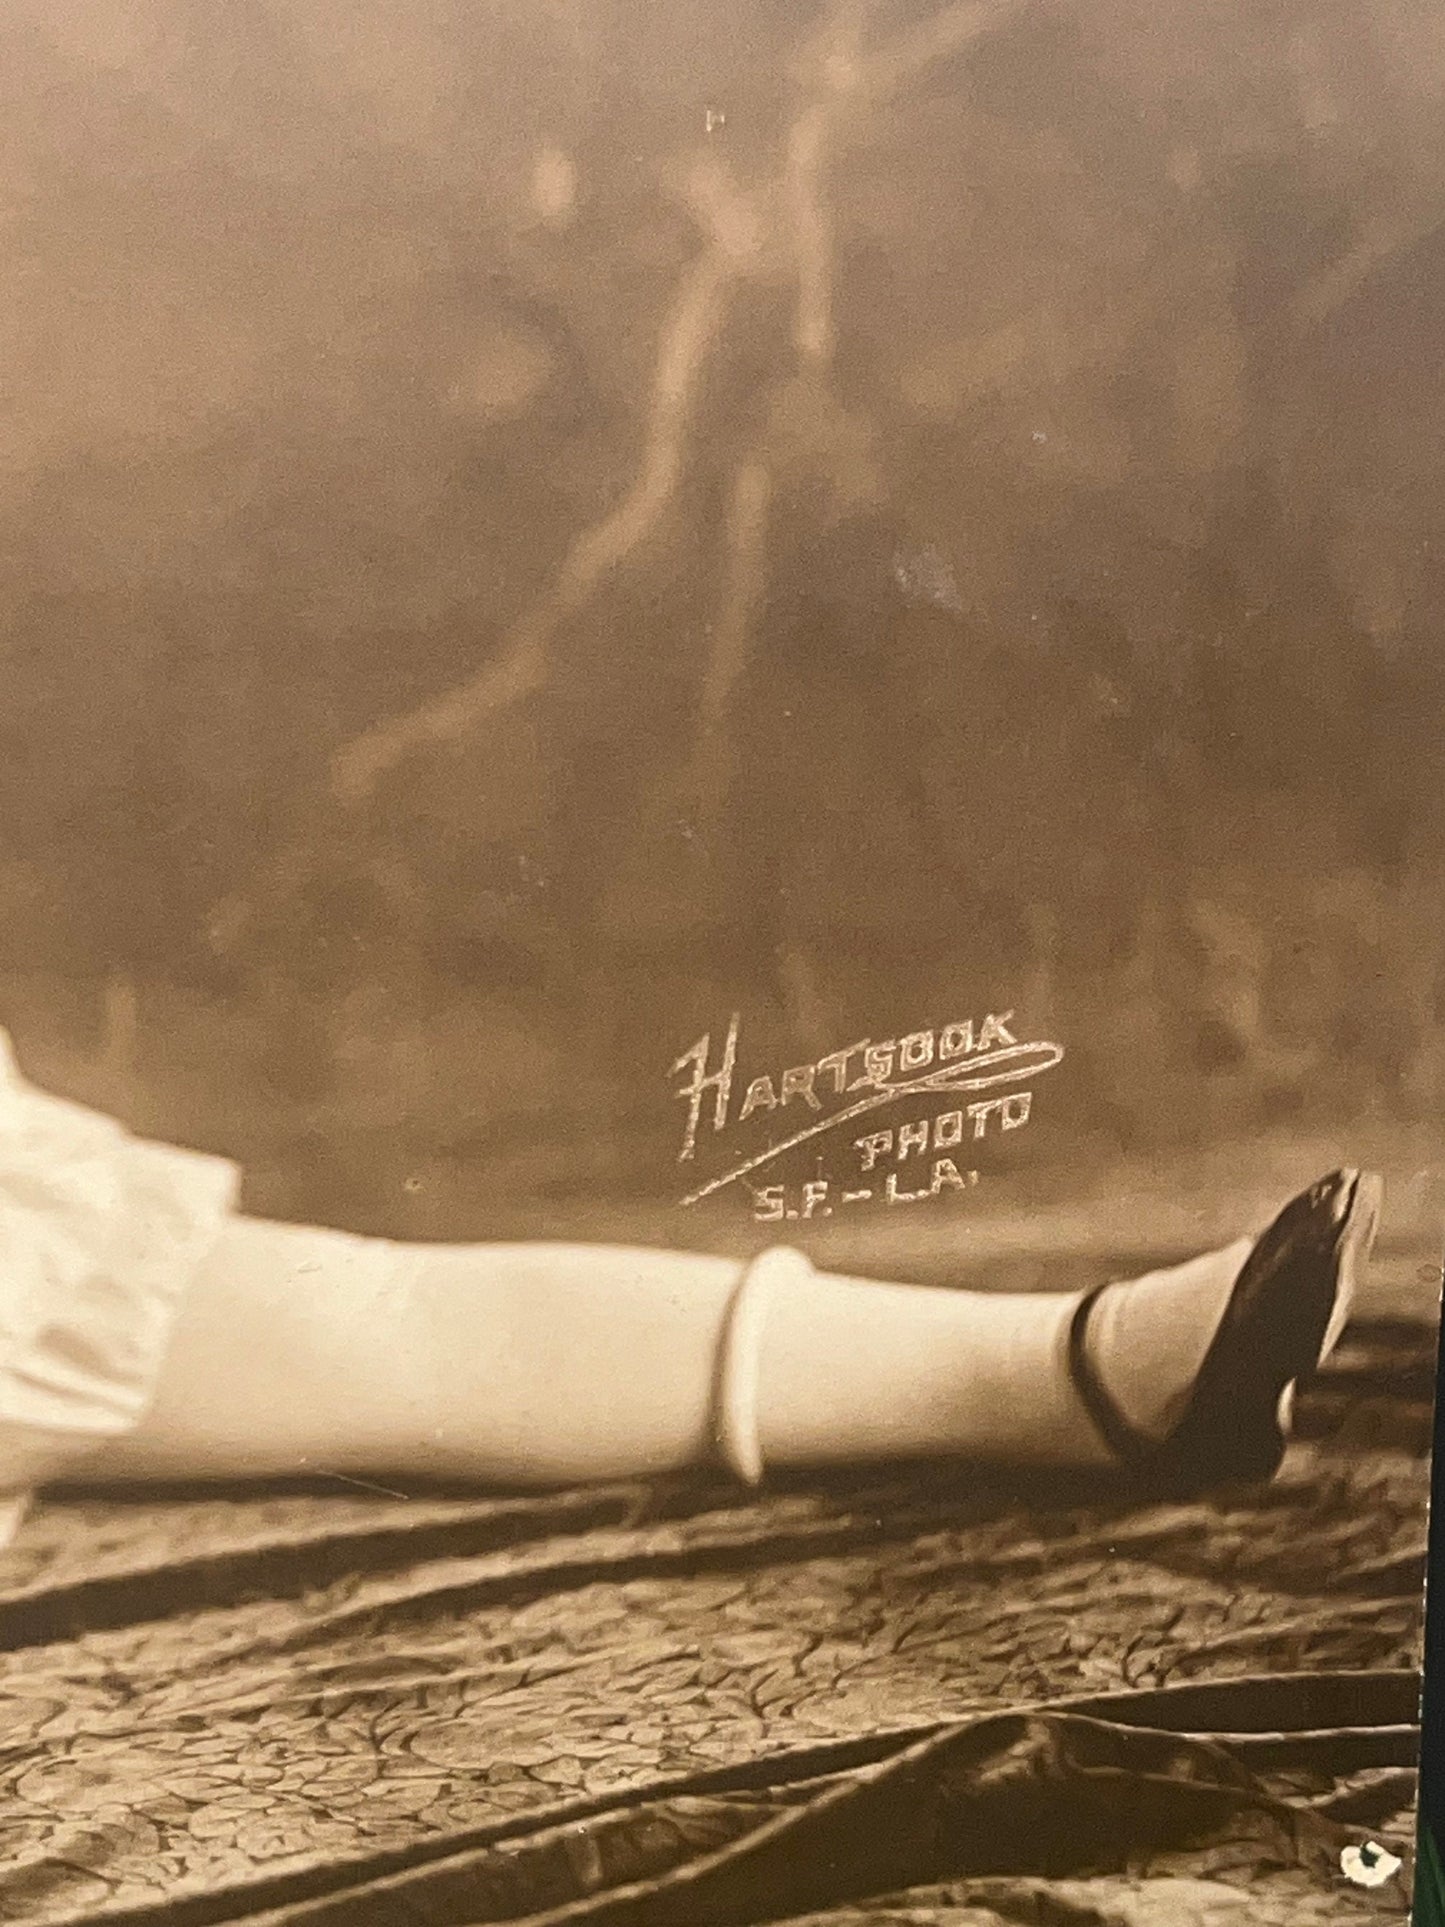 Antique photo art nouveau woman actress doing split 1910s Los Angeles